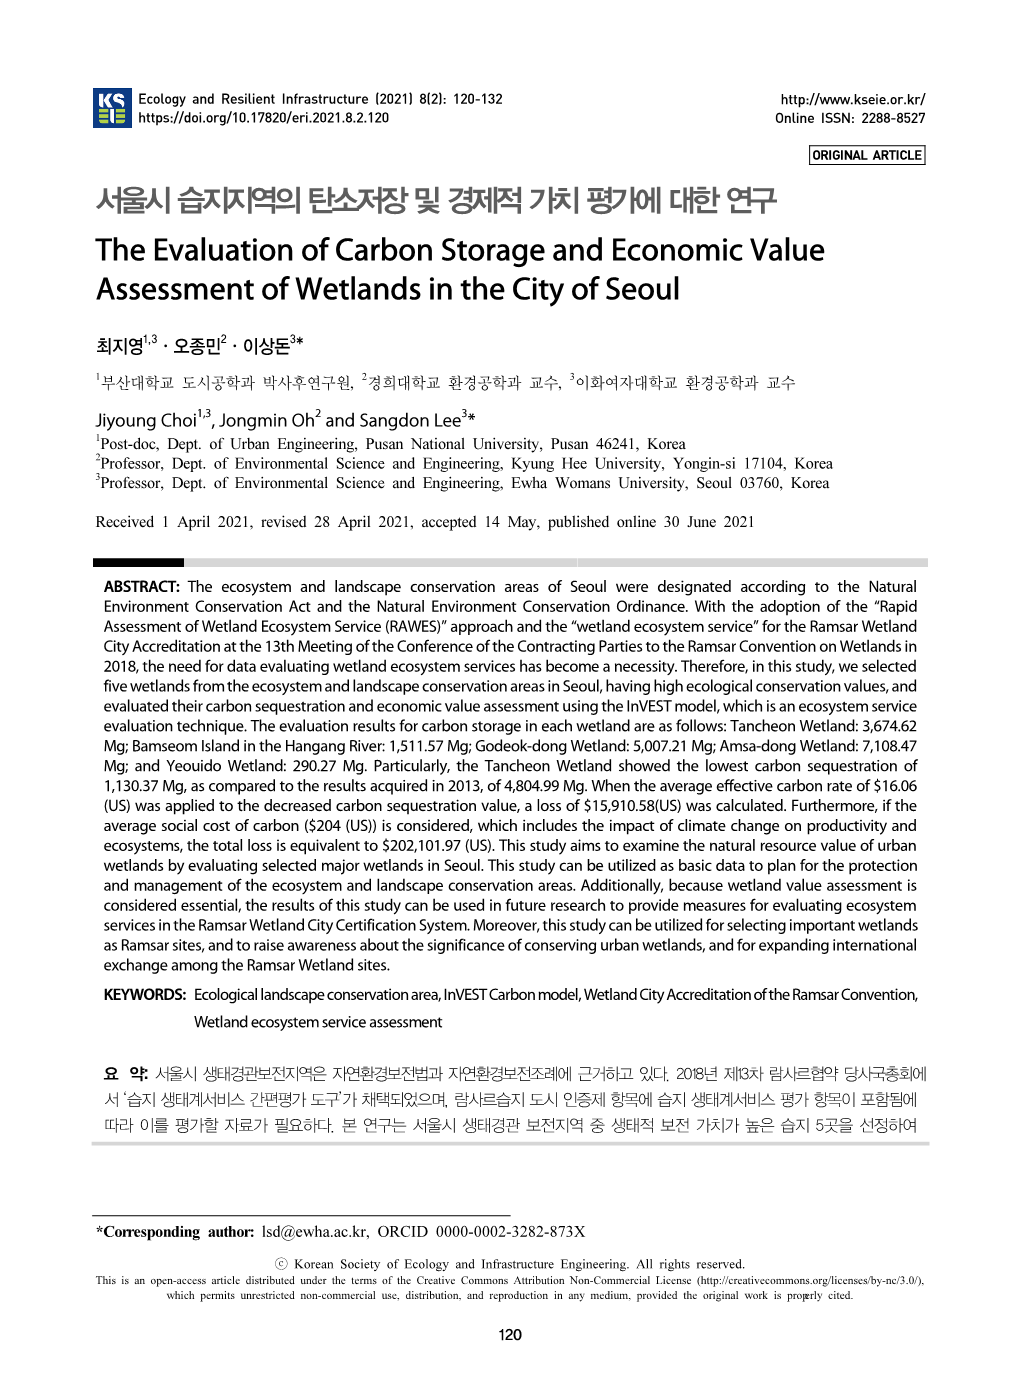 서울시 습지지역의 탄소저장 및 경제적 가치 평가에 대한 연구 the Evaluation of Carbon Storage and Economic Value Assessment of Wetlands in the City of Seoul